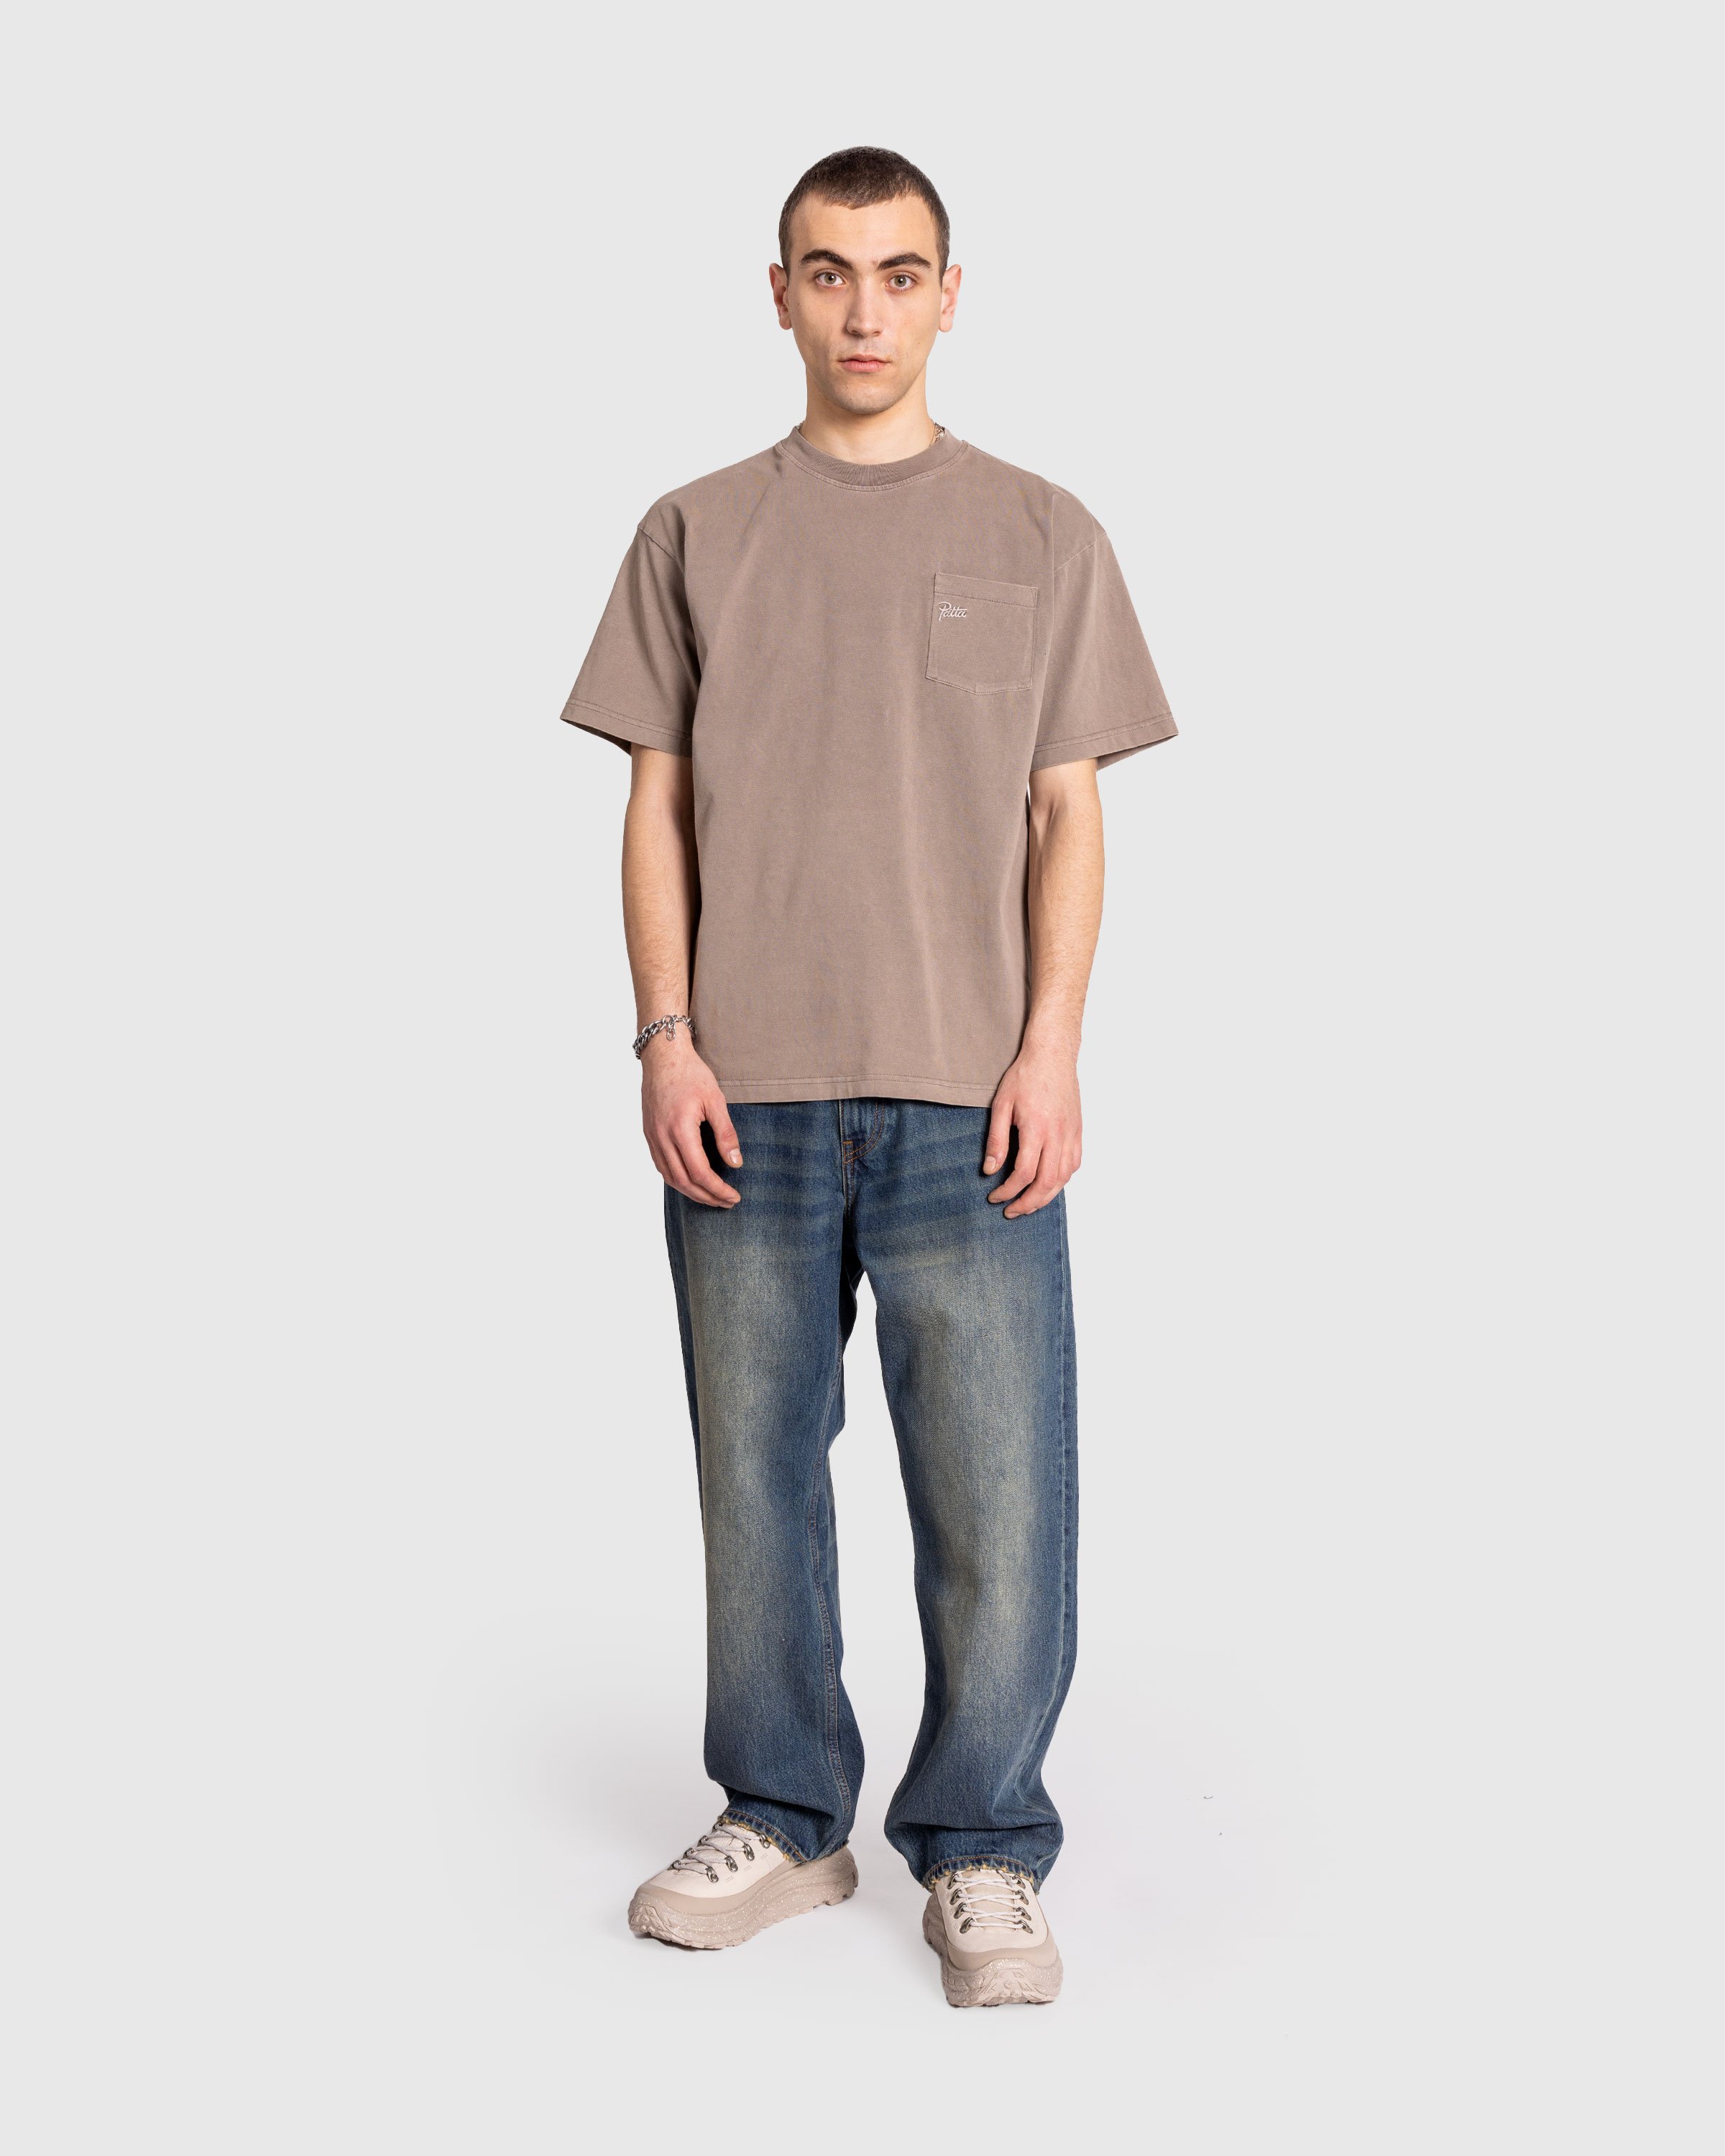 Patta - Basic Pocket T-Shirt Driftwood - Clothing - Grey - Image 3